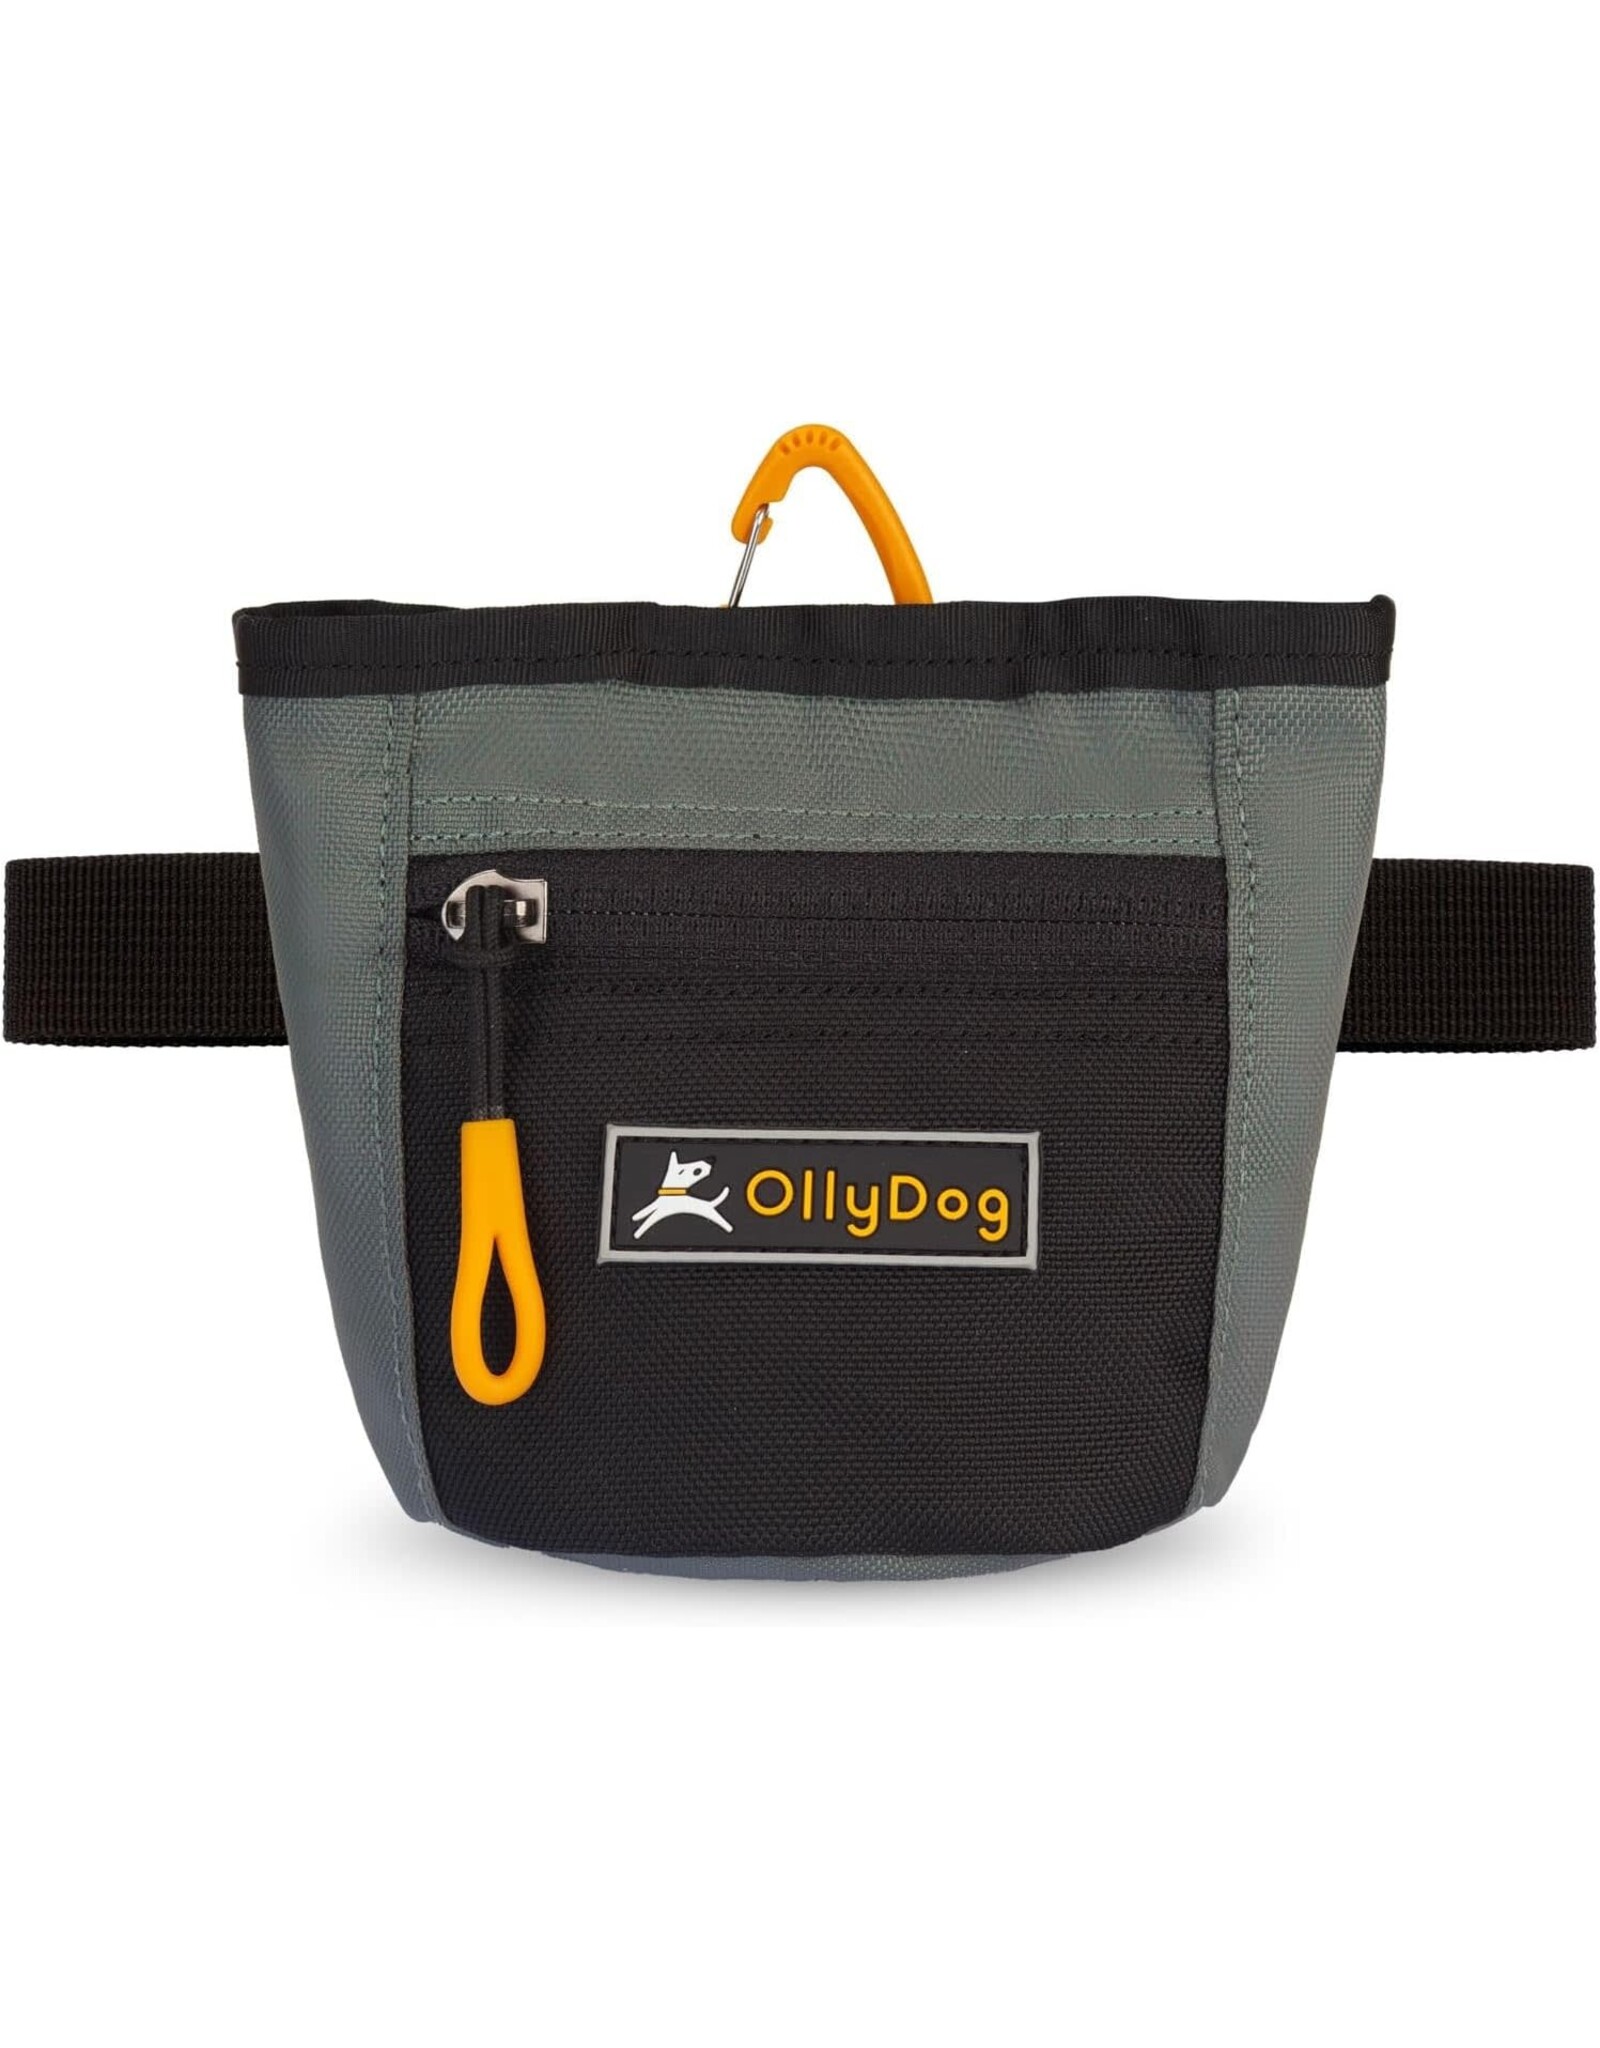 OllyDog Goodie Treat Bag: Juniper, os